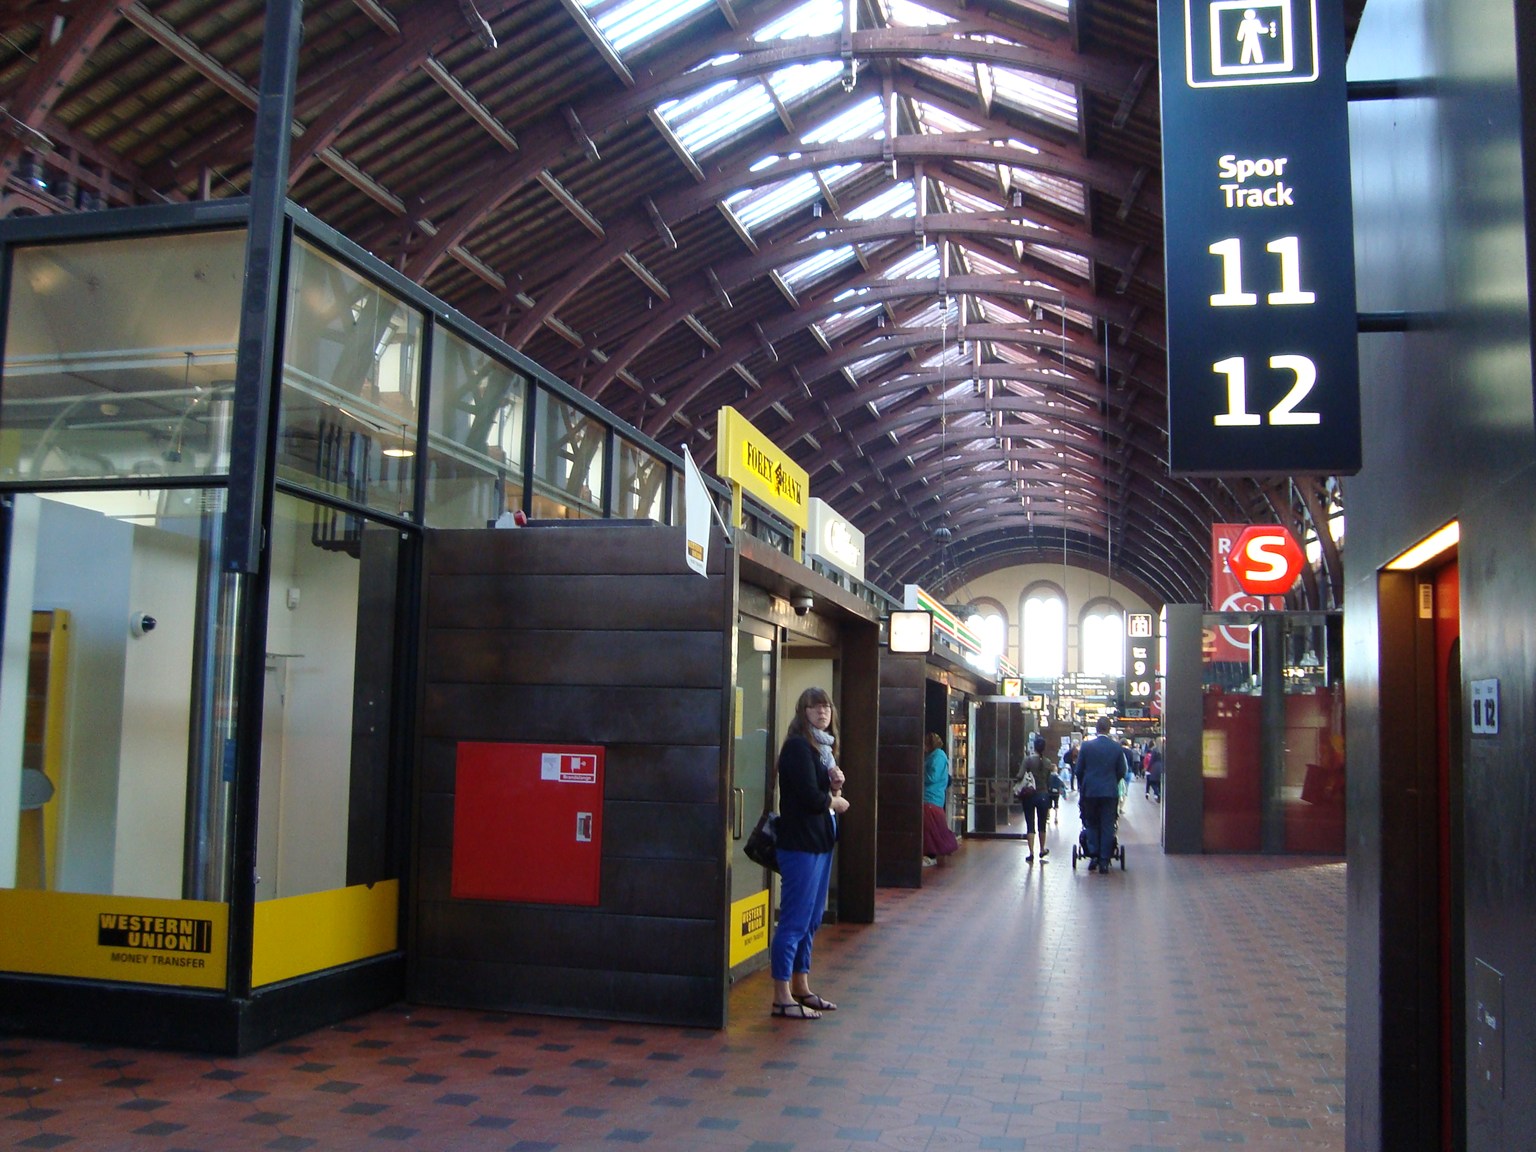 朝、駅を通り抜けて、コペンハーゲンの街を歩きます。…右端の11,12はホームに降りるエレベータの表示。